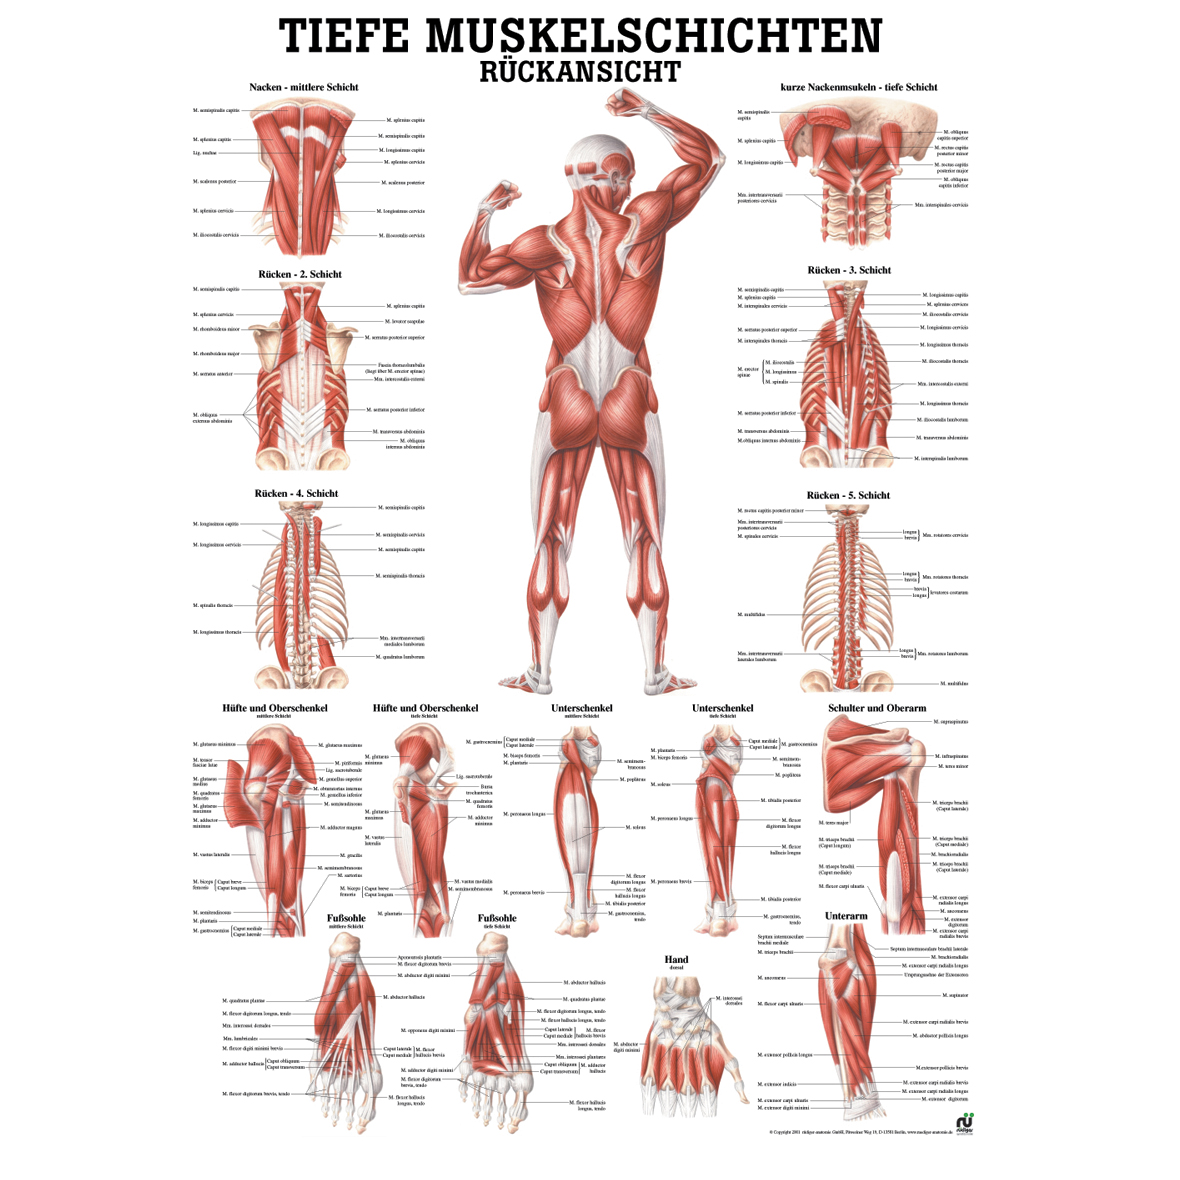 Anatomische Lehrtafel "Tiefe Muskelschichten - Rückansicht"